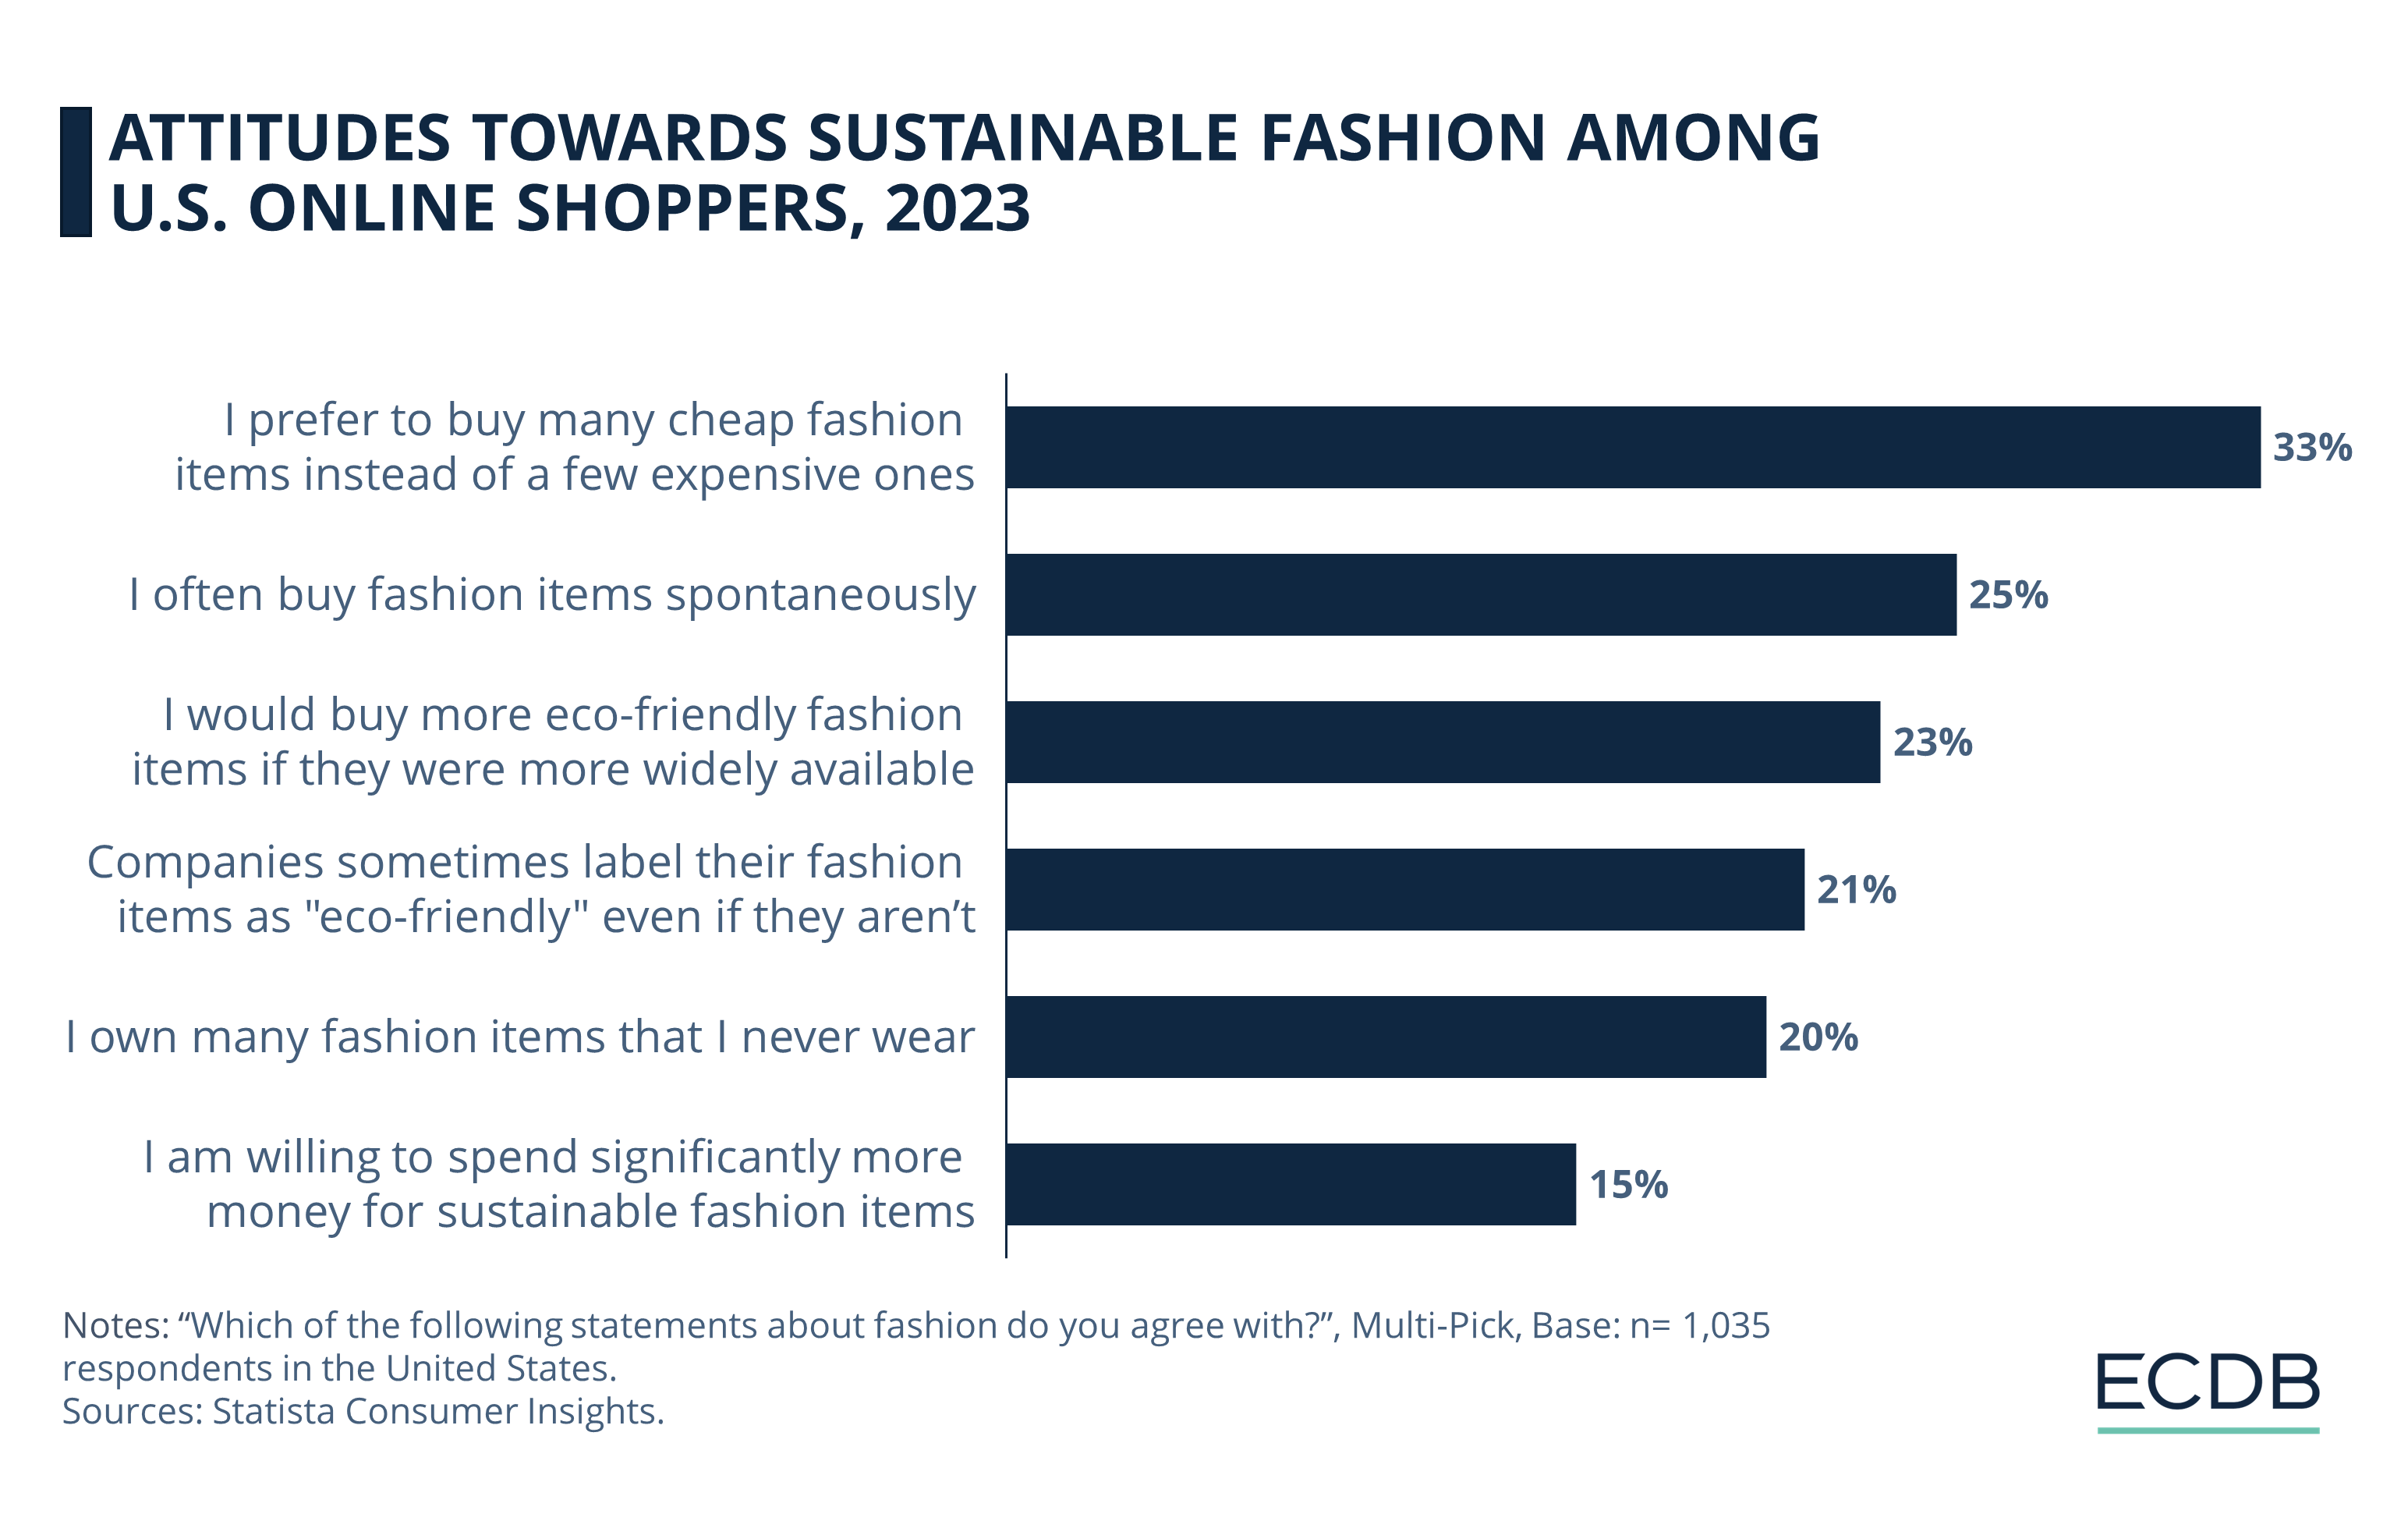 Attitudes Towards Sustainable Fashion Among U.S. Online Shoppers, 2023